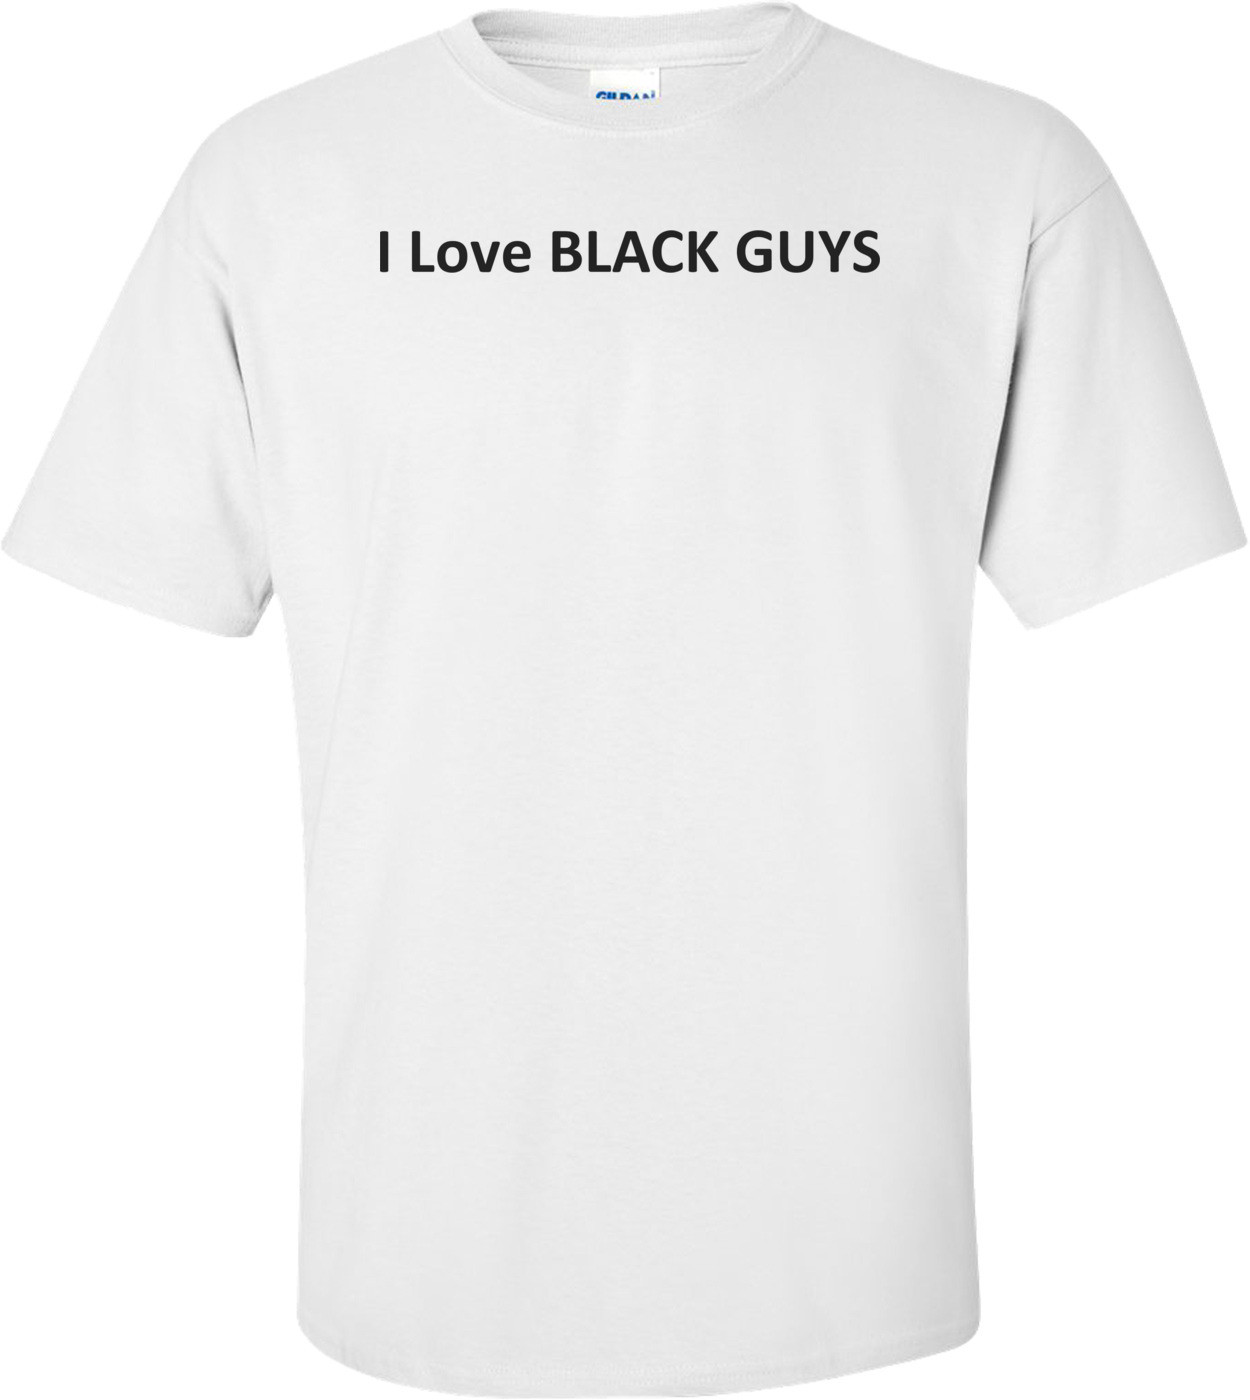 I Love BLACK GUYS